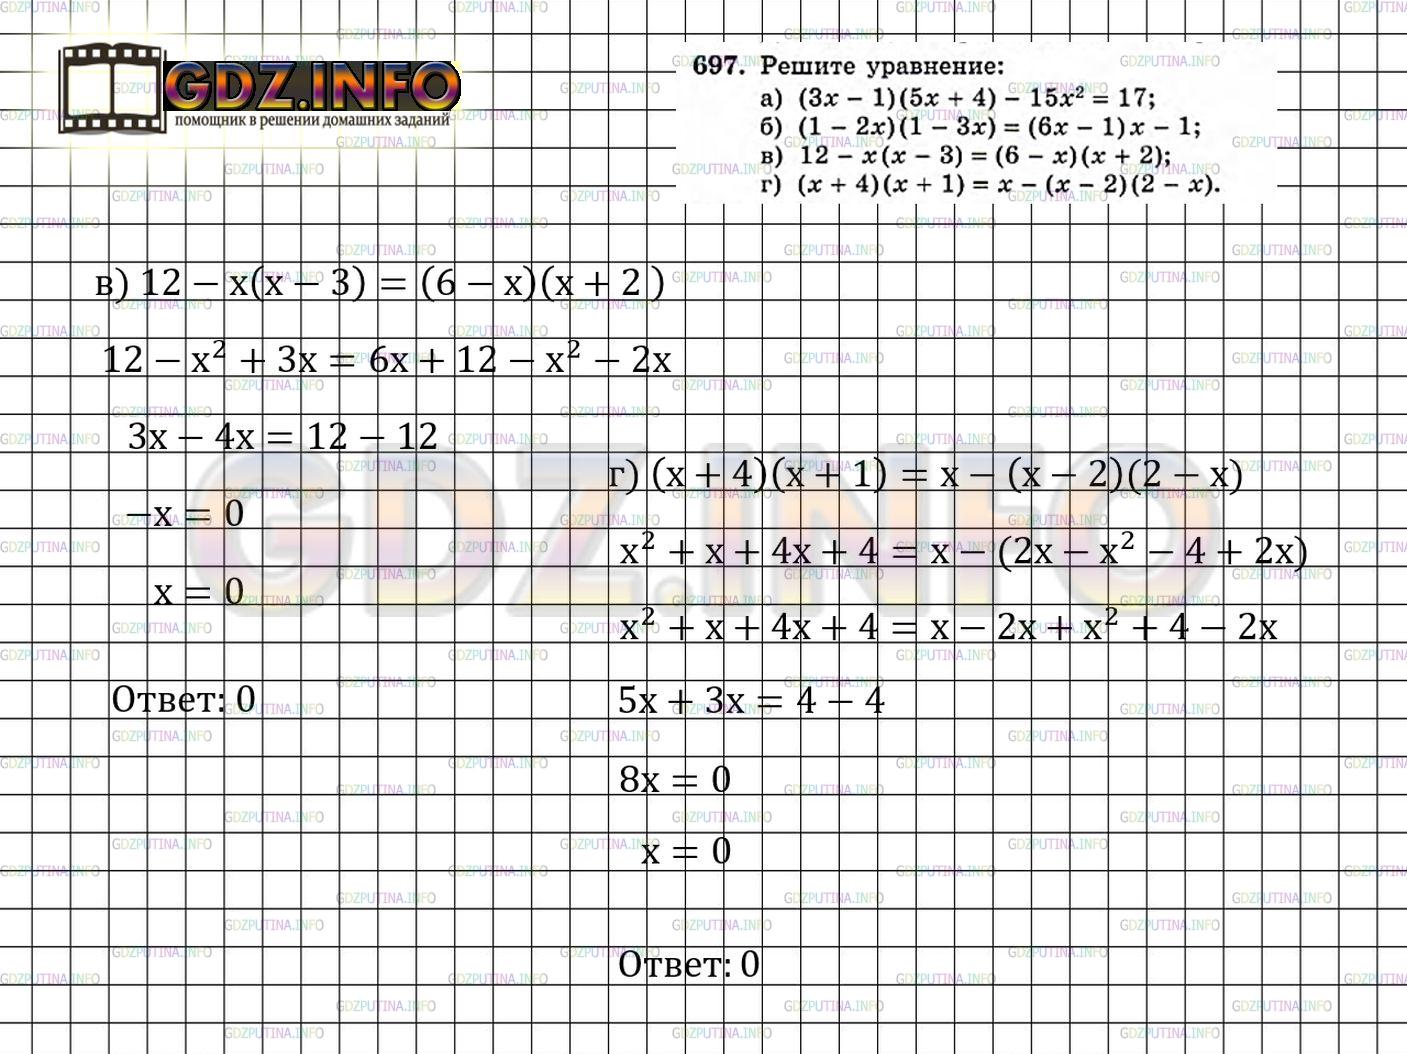 Фото решения 5: Номер задания №697 из ГДЗ по Алгебре 7 класс: Макарычев Ю.Н. г.